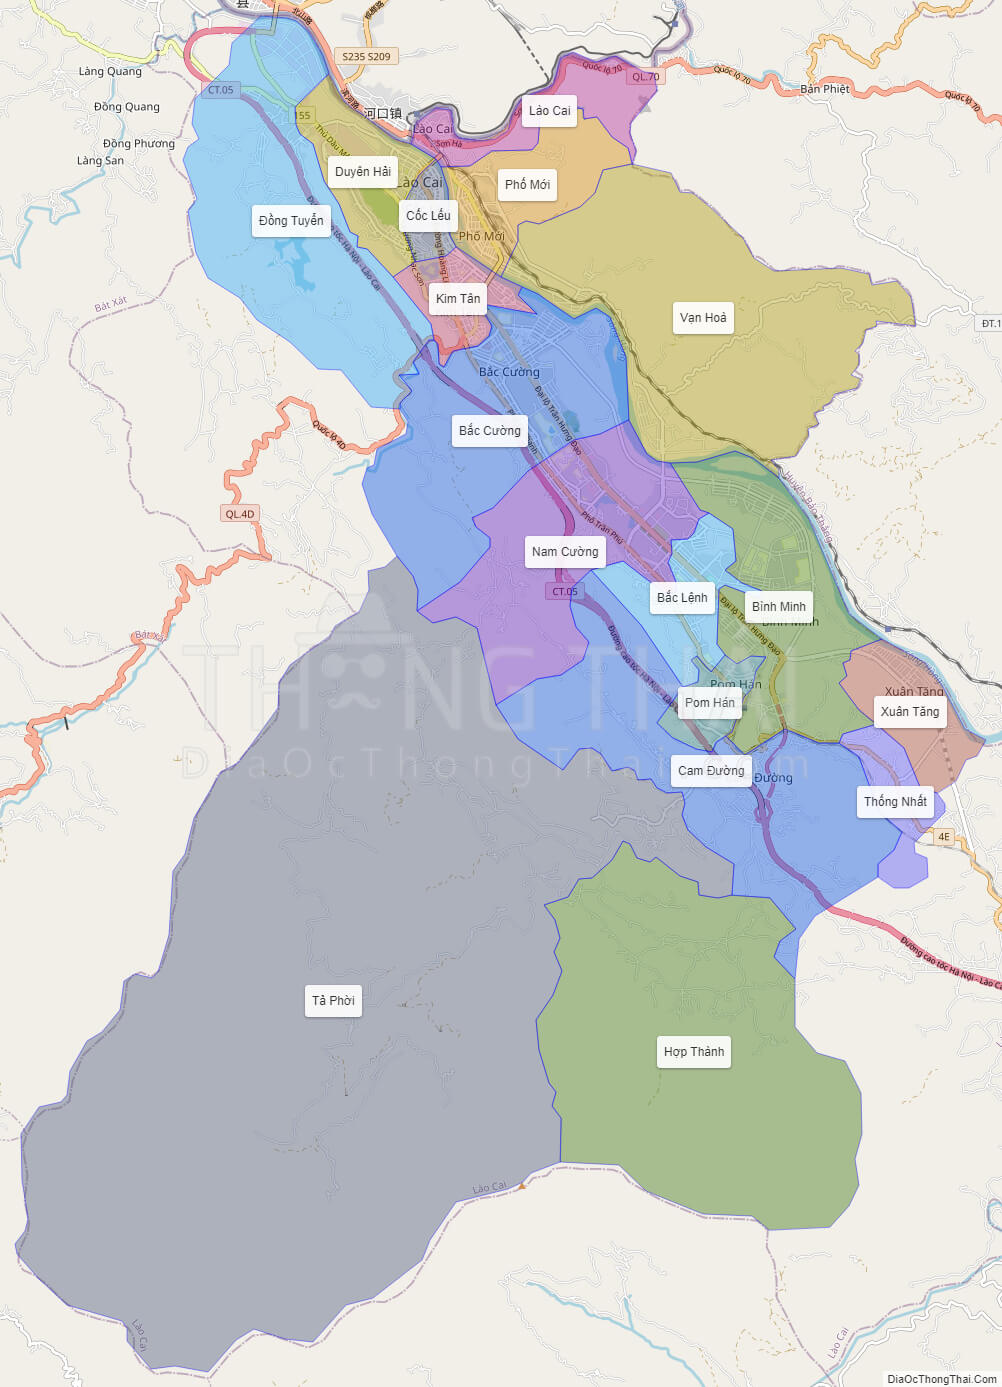 Với Lào Cai map 2024, du khách sẽ cảm nhận được sự phát triển, tiến bộ của thành phố Lào Cai. Đây là bản đồ cập nhật những khu vực đang được đầu tư phát triển để đưa trải nghiệm du lịch của khách hàng lên tầm cao mới.